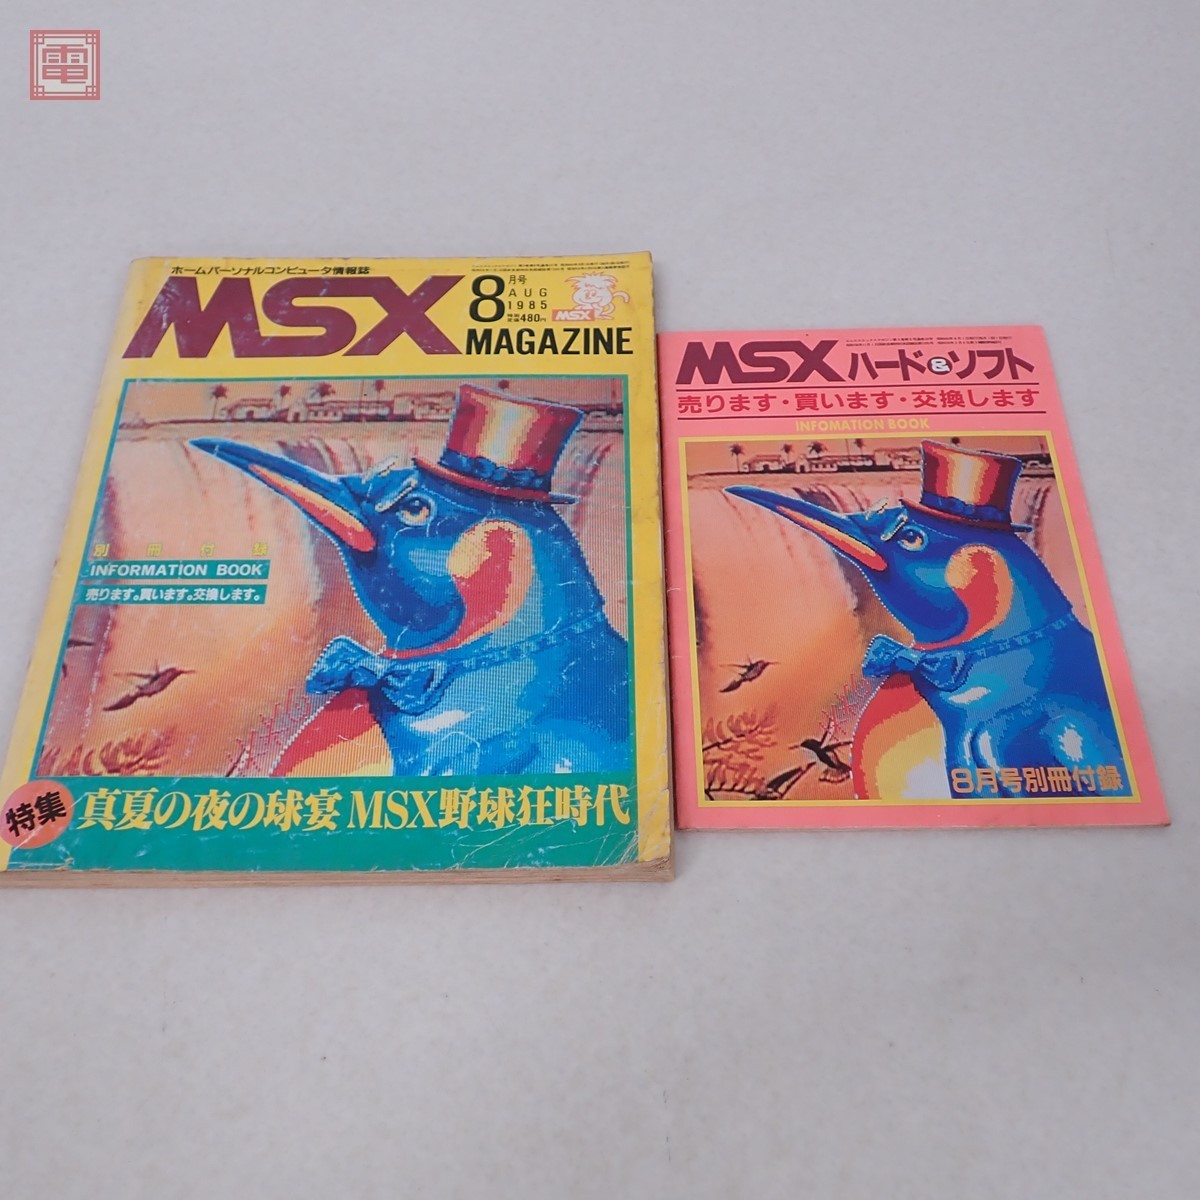 あすつく】 MSX マガジン MSXmagazine 1985年 2月号 shubhamholidayhomes.com